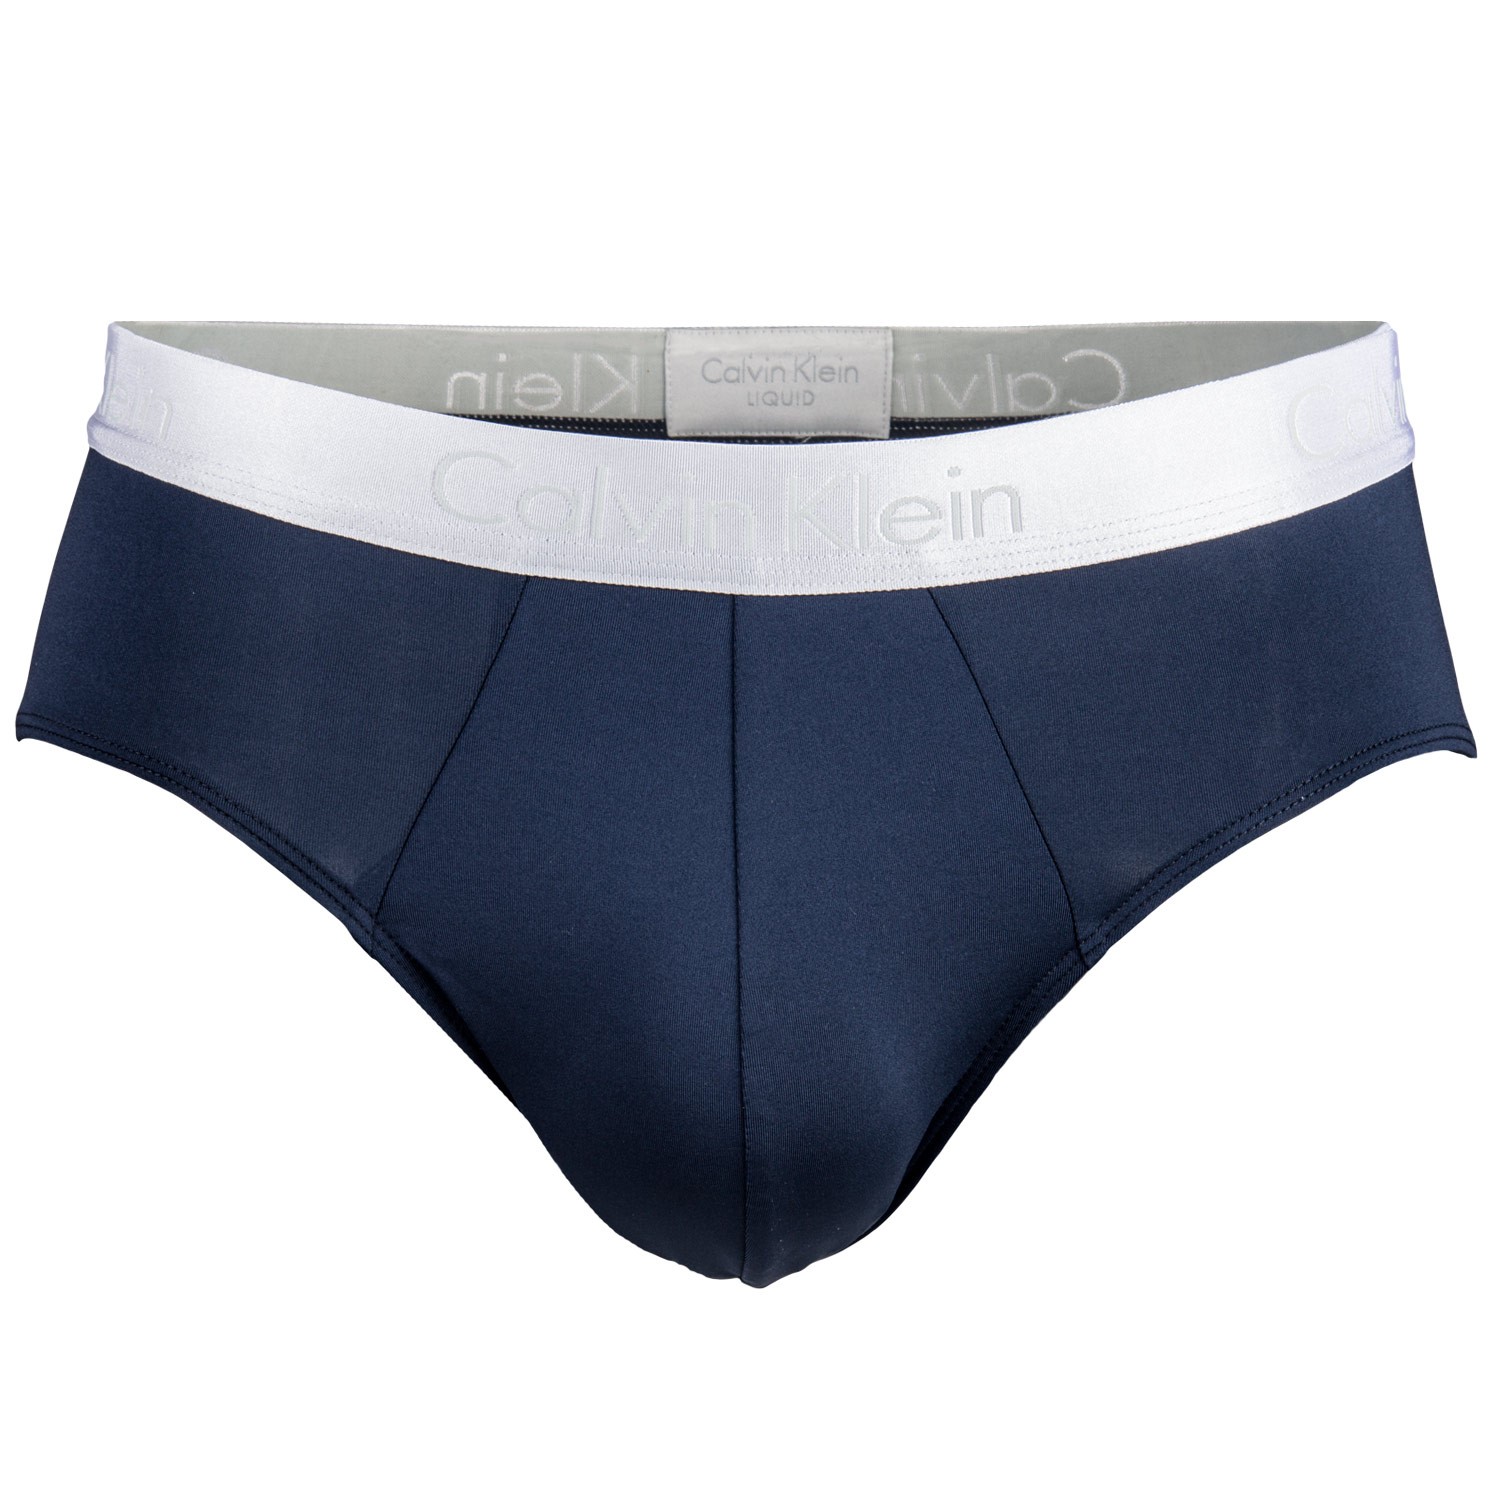 calvin klein underwear discount